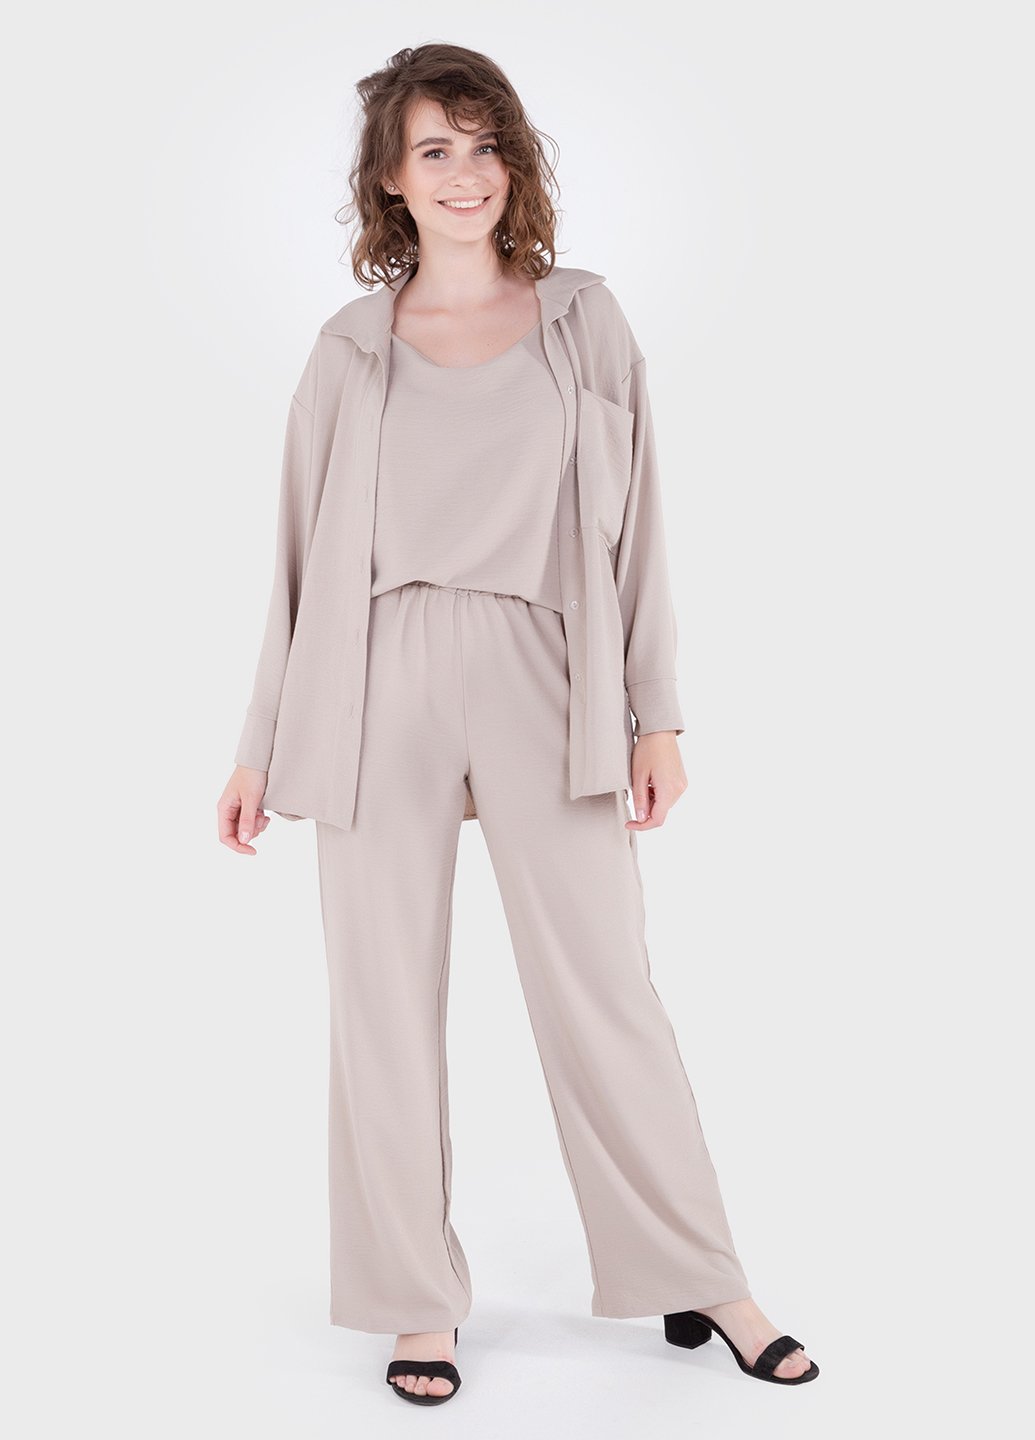 Купить Модный летний костюм женский бежевого цвета Merlini Тройка 100000130, размер 42-44 в интернет-магазине